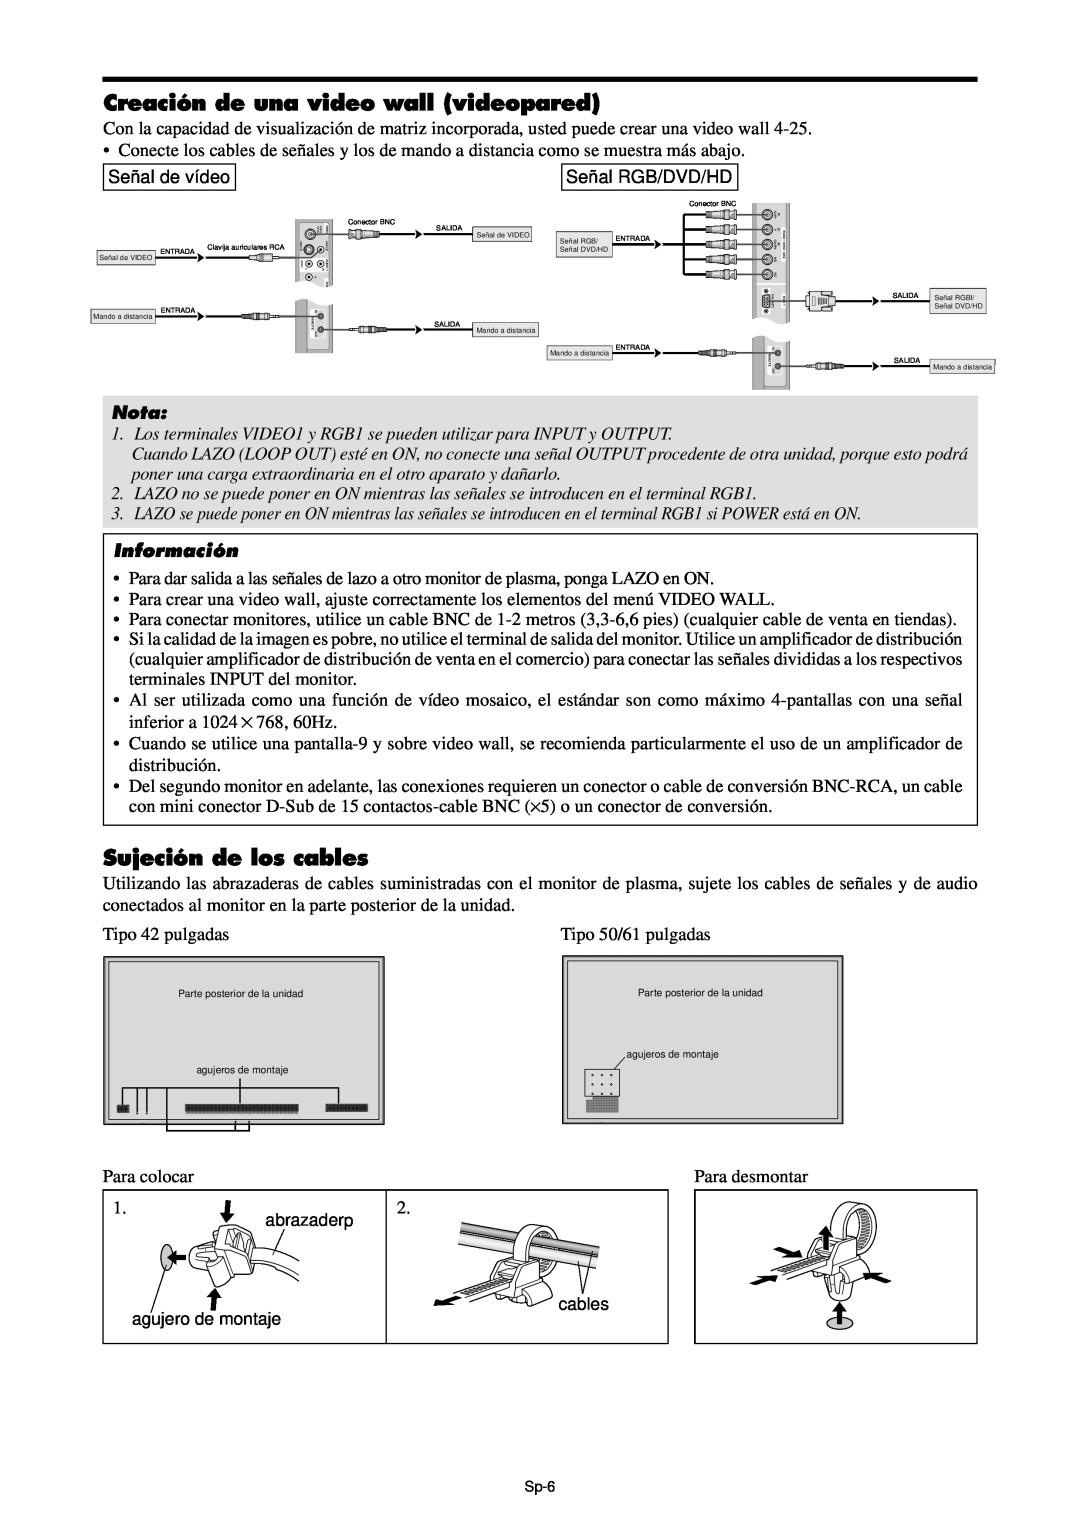 NEC PX-61XM4A, PX-42XM4A manual Creación de una video wall videopared, Sujeción de los cables, Nota, Información 